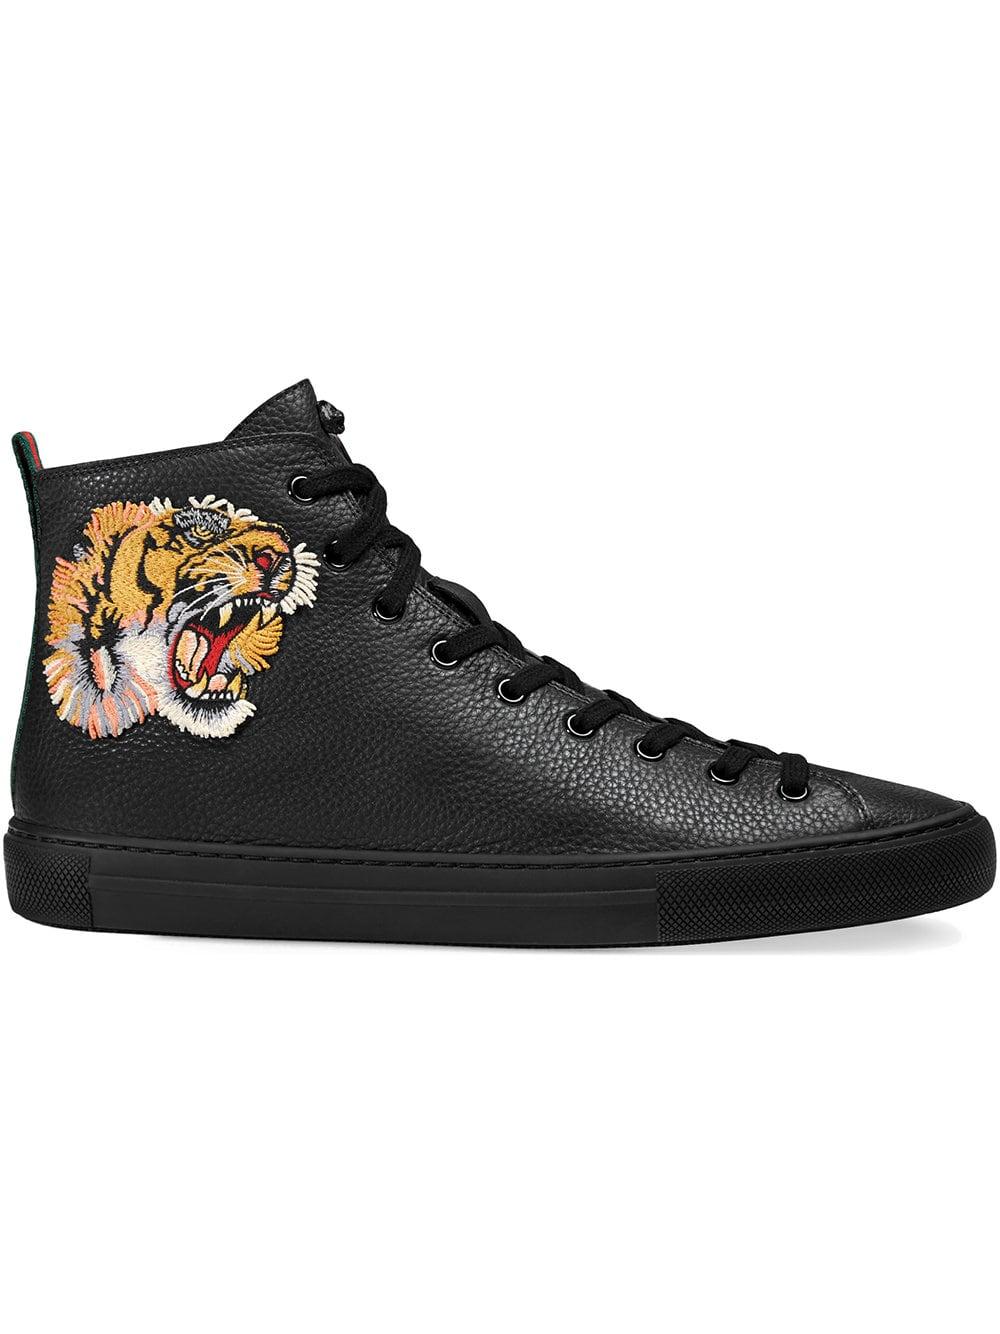 Gucci Leather Sneaker Alta In Pelle Con Tigre in Black for Men - Lyst